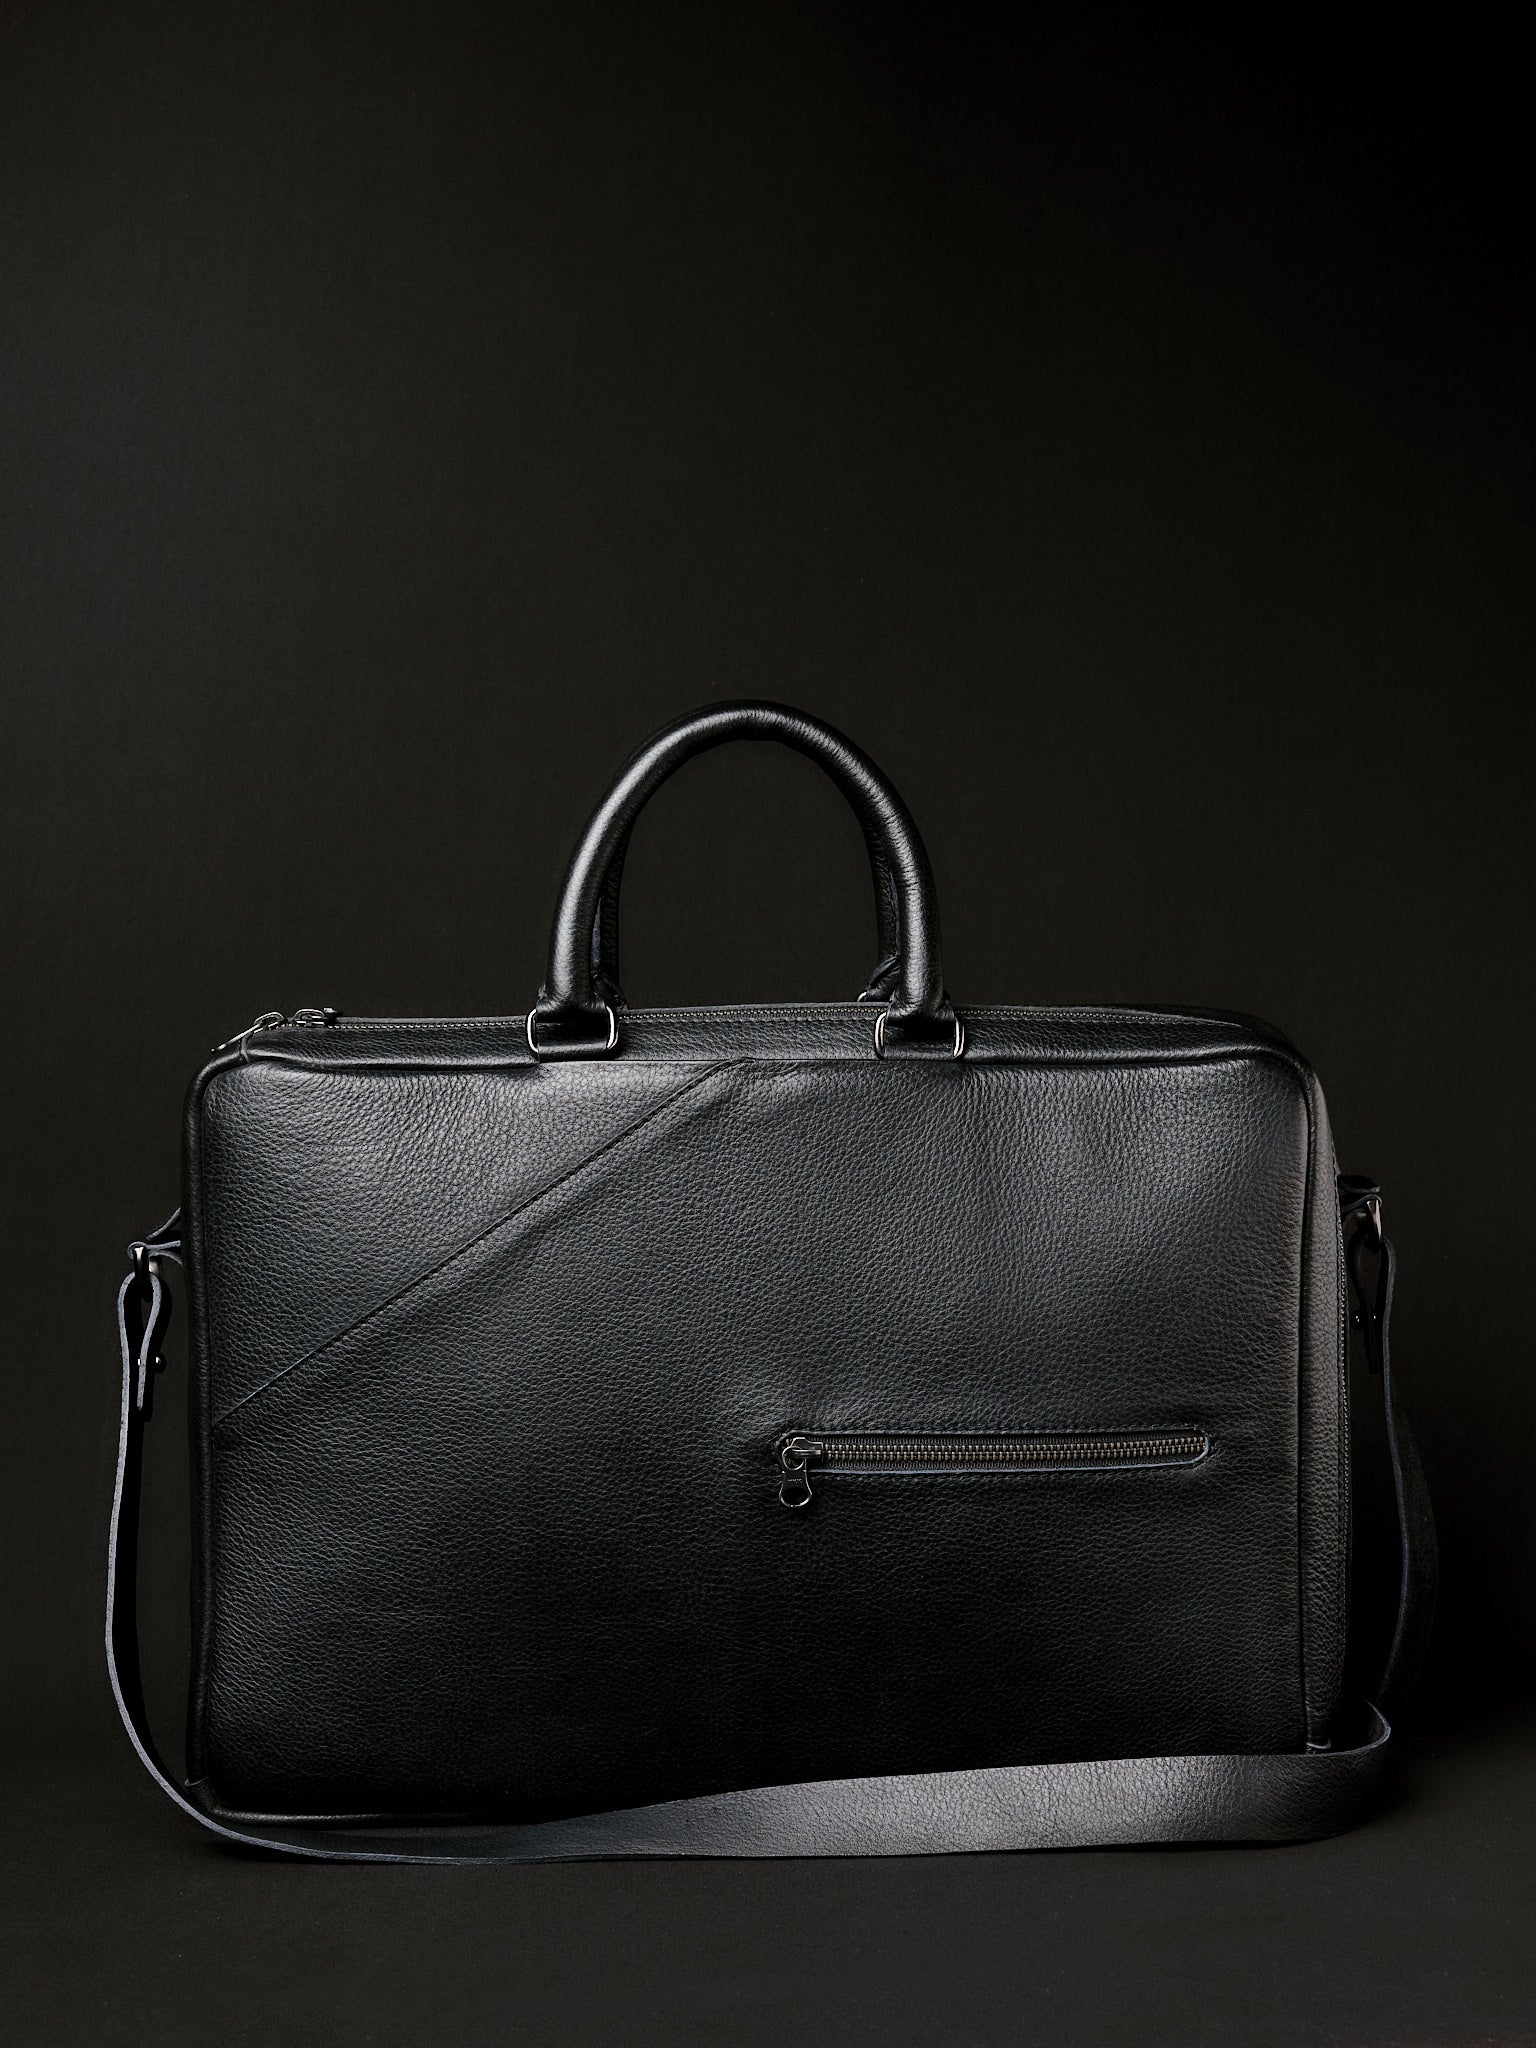 Leather Briefcase for Men. Shoulder Bag. Backpack Briefcase Black by Capra Leather